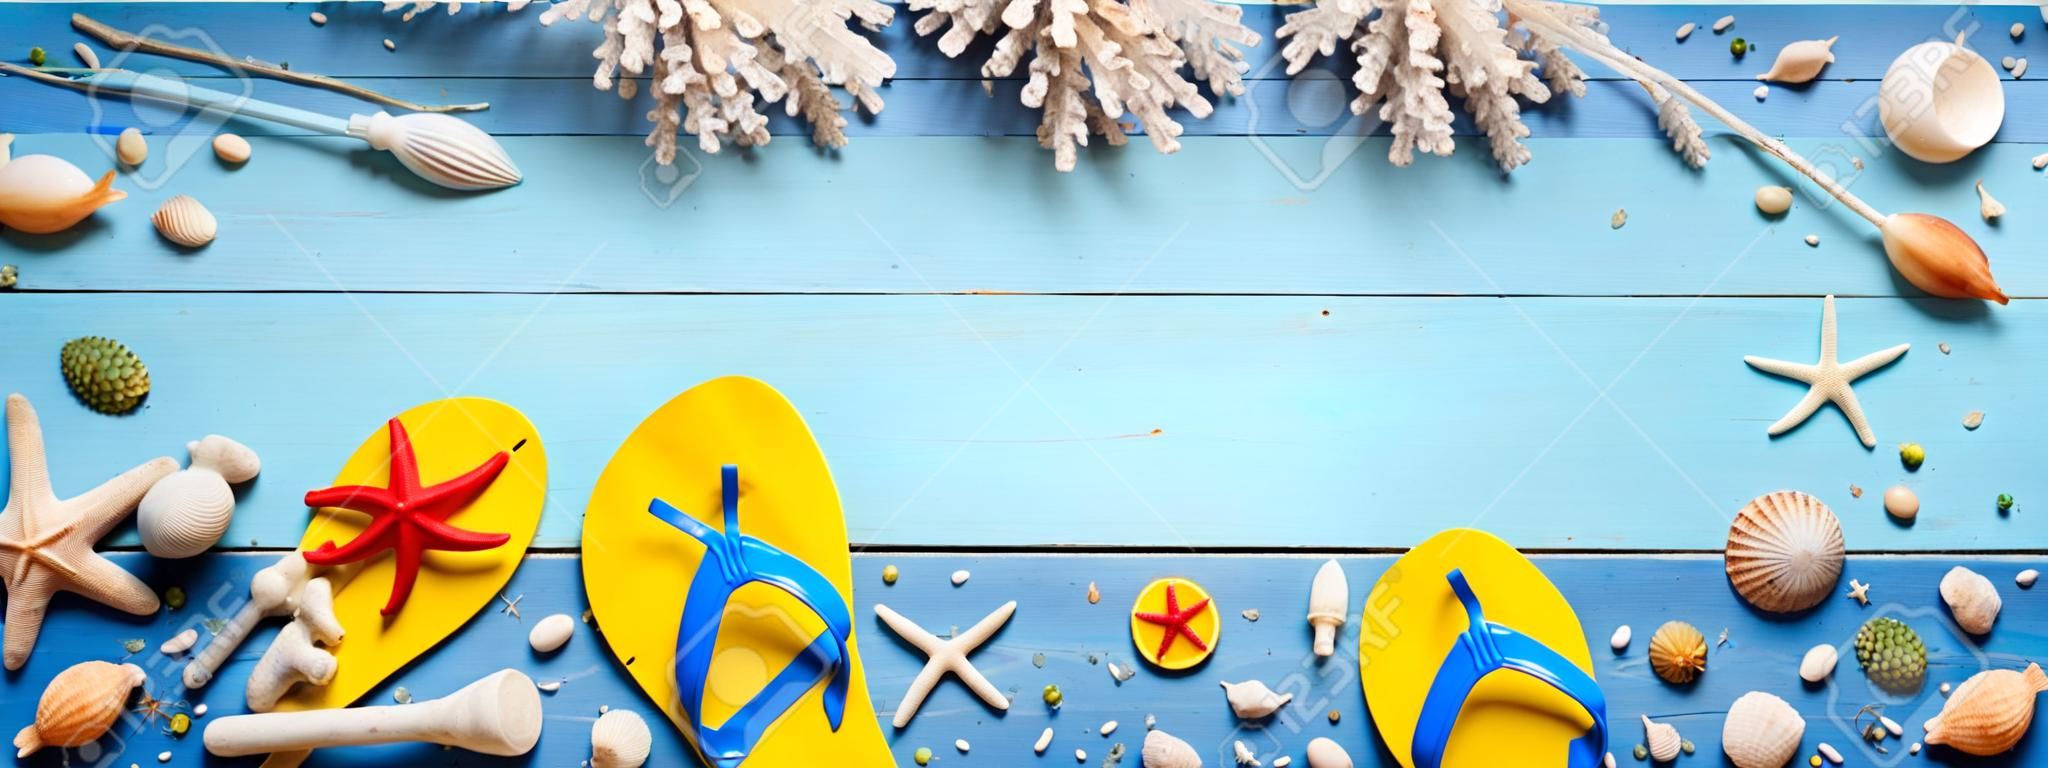 Accesorios De Playa En Tablón Azul - Banner De Vacaciones De Verano